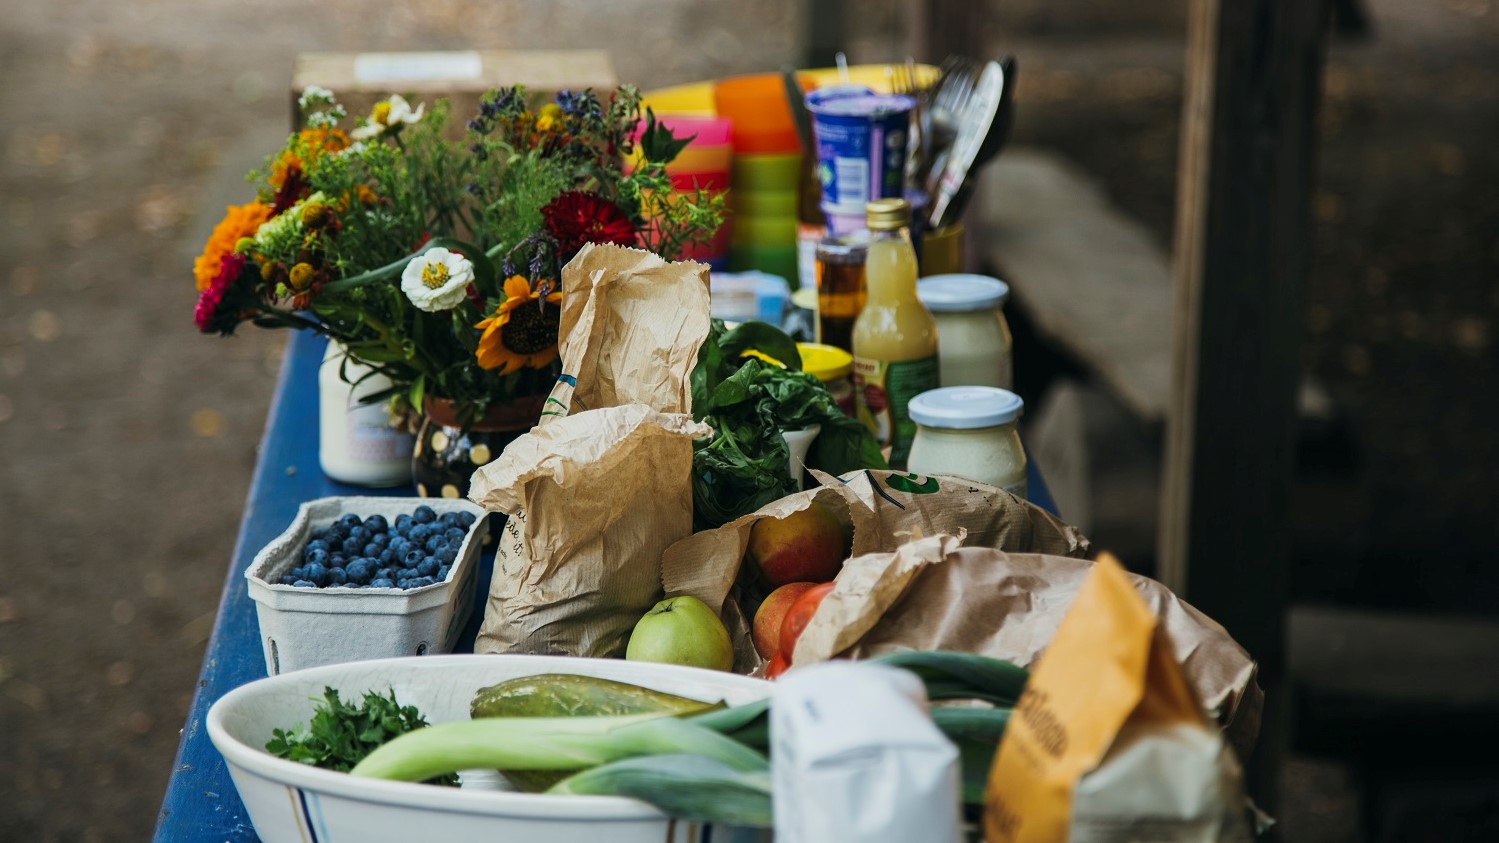 Lebensmittel, die wie frisch vom Einkauf auf einer Küchentheke aufgestellt sind. Darunter ist viel Gemüse und Obst in Pappschalen, sowie ein Blumenstrauß und Milchprodukte in Glasbehältern.